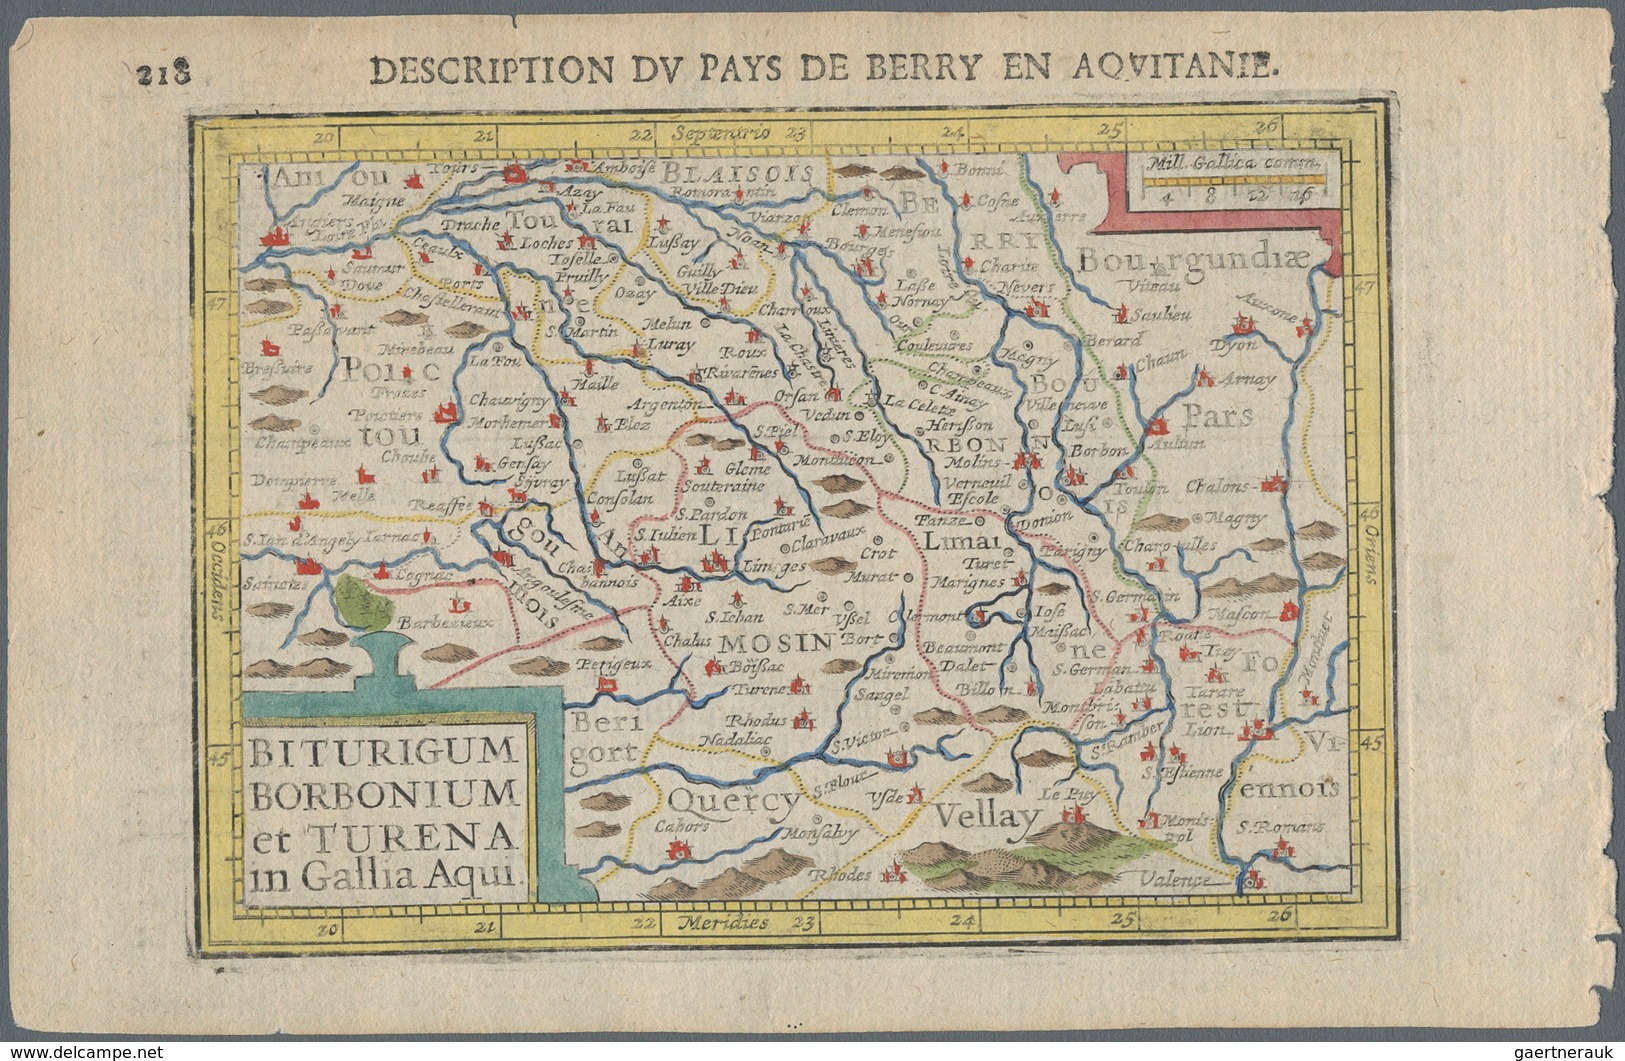 Landkarten Und Stiche: 1610. Biturgum Borbonium Et Turena In Gallia Aqui. Bertius, Petrus. Attractiv - Geographie